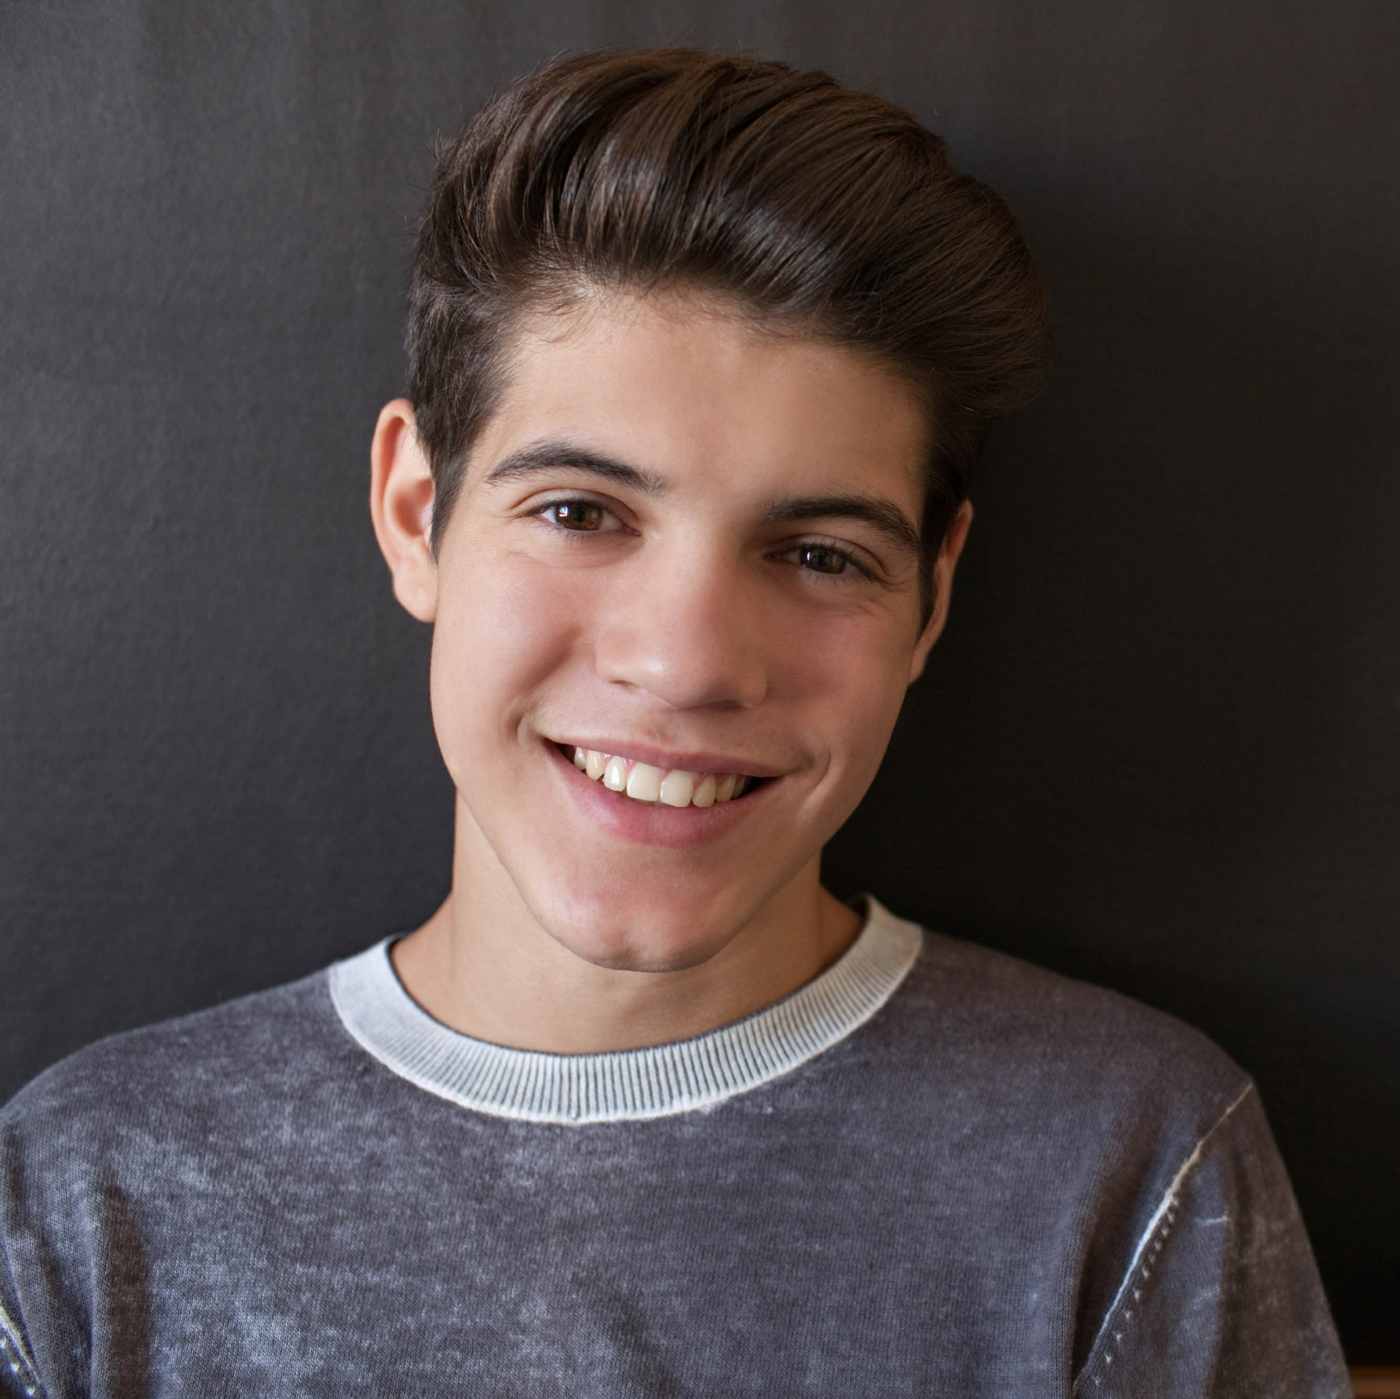 Dezenter Sidecut für einen jungen Teenager mit dunklen Haaren